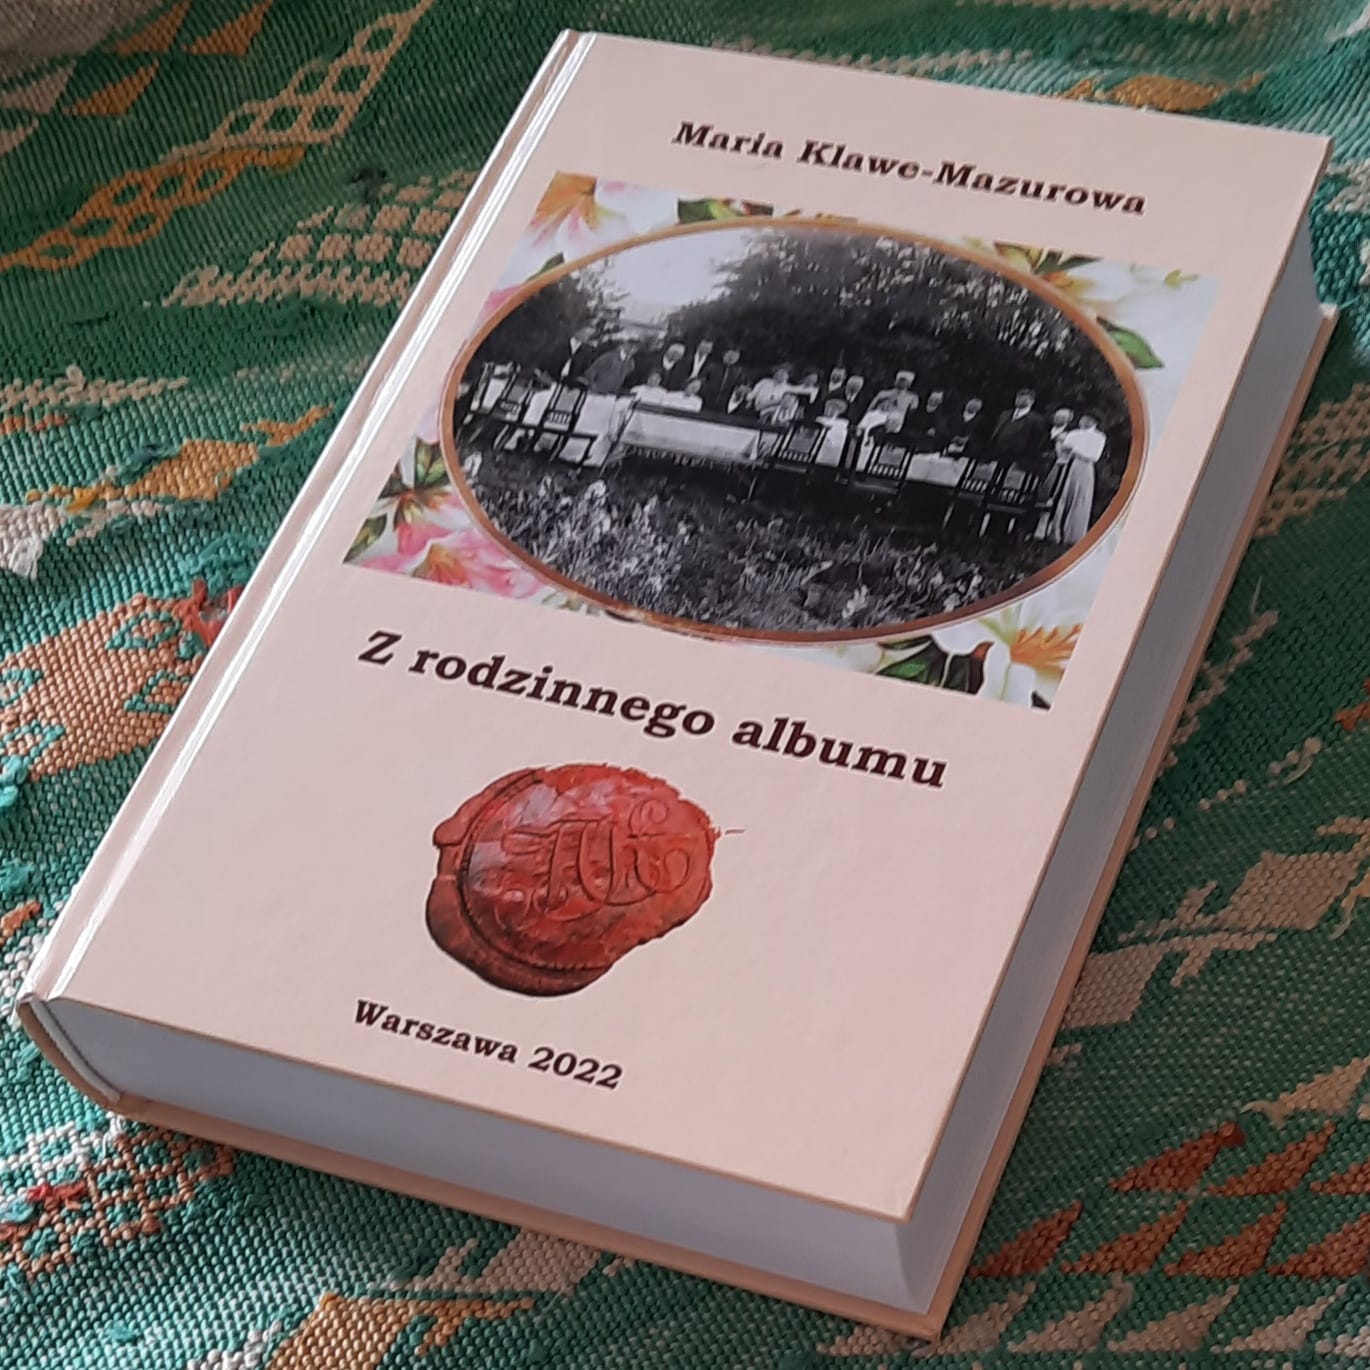 Książka „Z rodzinnego albumu” Marii Klawe-Mazurowej